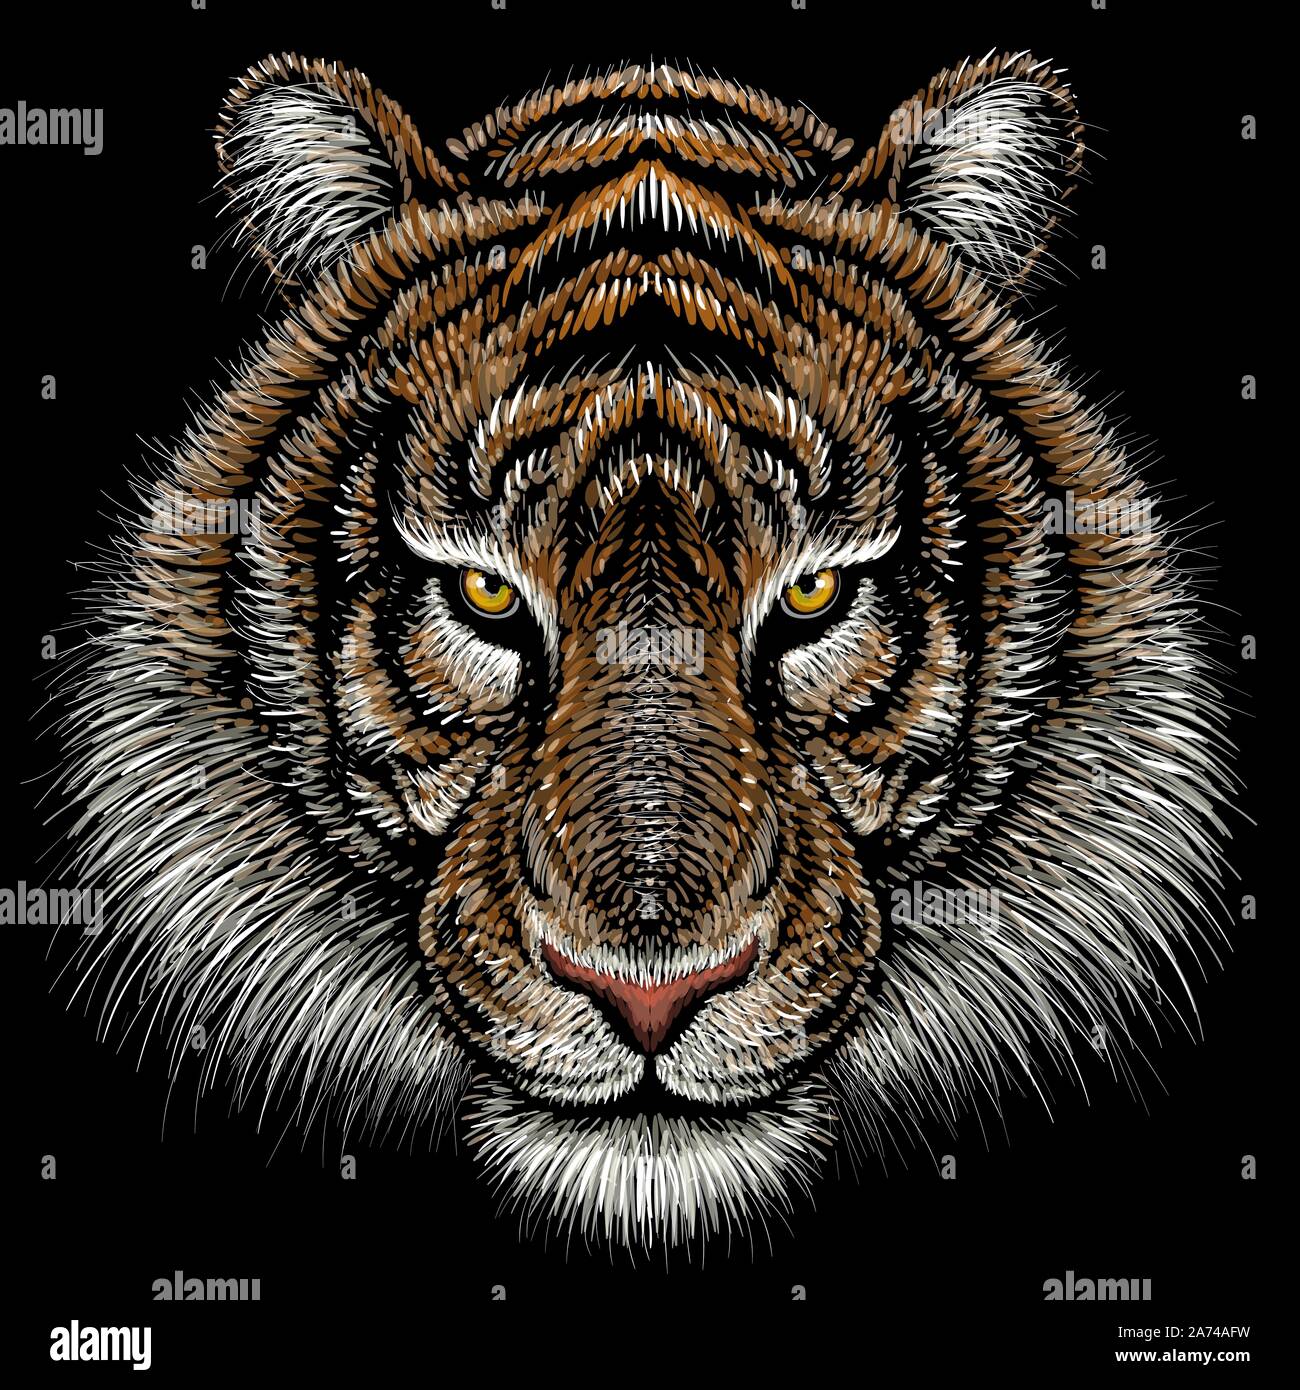 Tiger Print Vector Art & Graphics